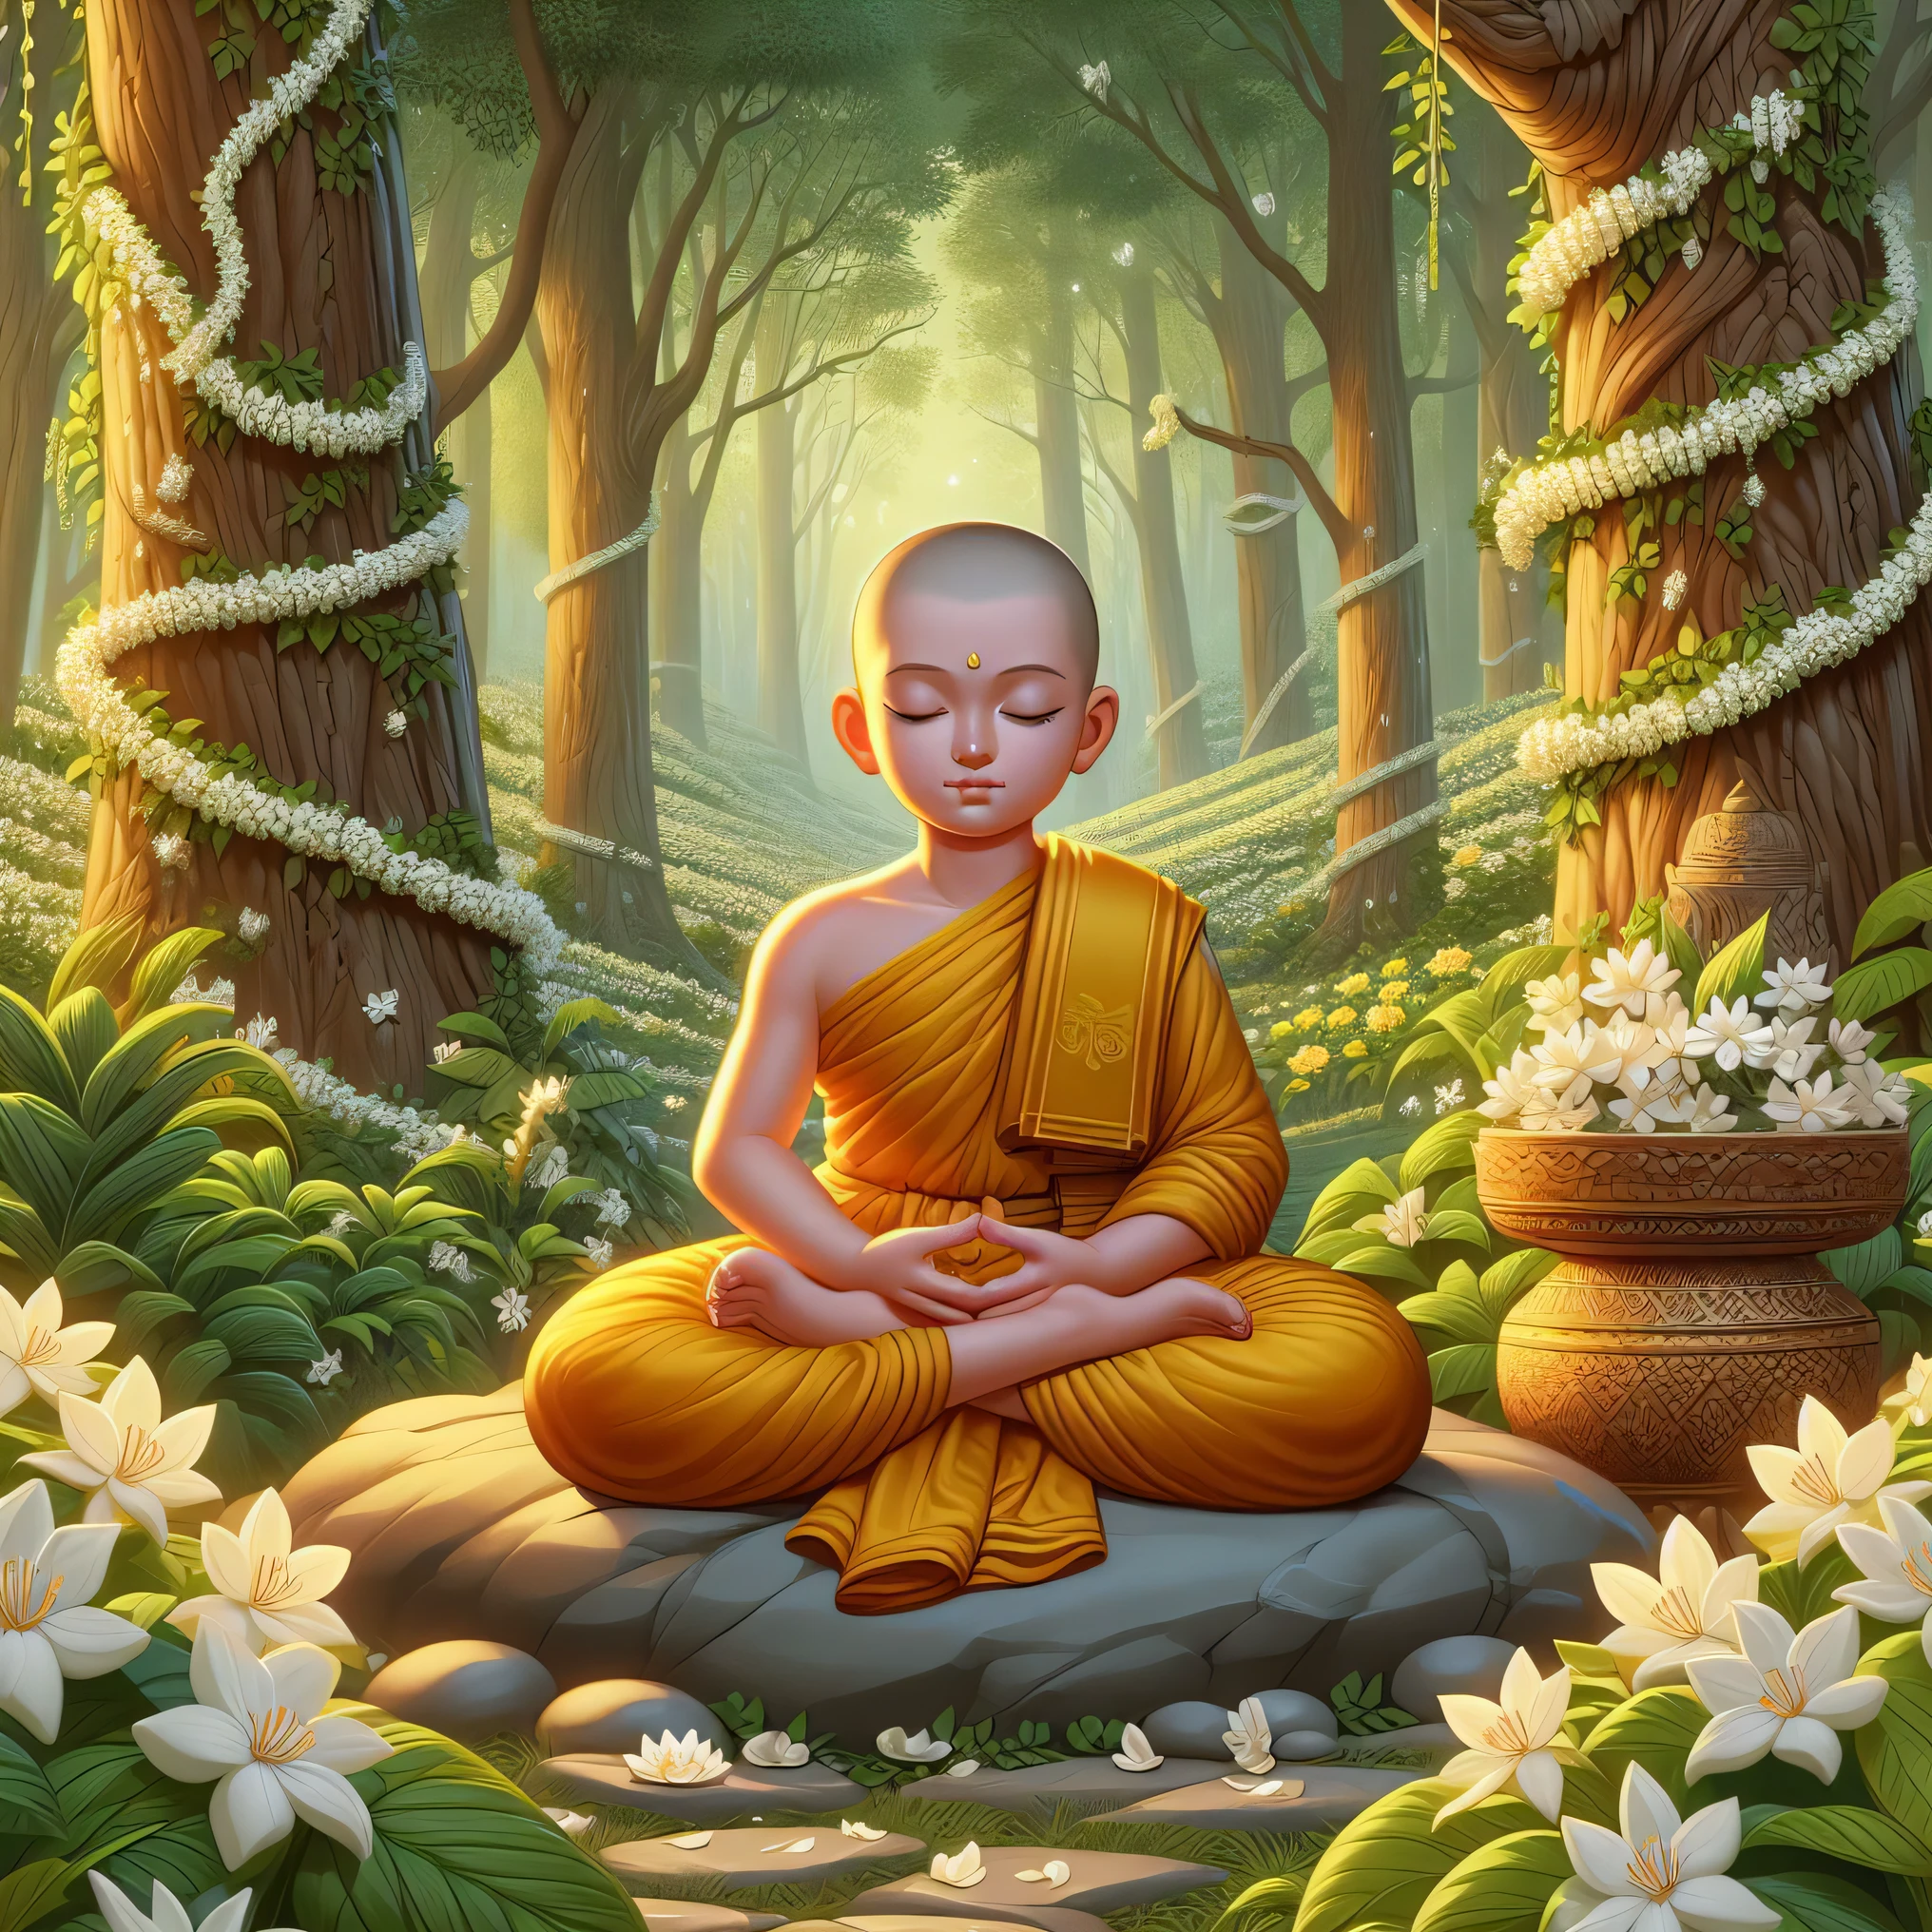 buddha sitting in meditação position in a forest with flowers, monge meditar, budista monk meditando, budismo, no caminho para a iluminação, o Buda, no caminho da iluminação, samsara, ilustração serena, budista, budista monk, hindu stages of meditação, meditando, meditação, Tithi Luadthong, Iluminado, arte conceitual de um monge, pureza mística